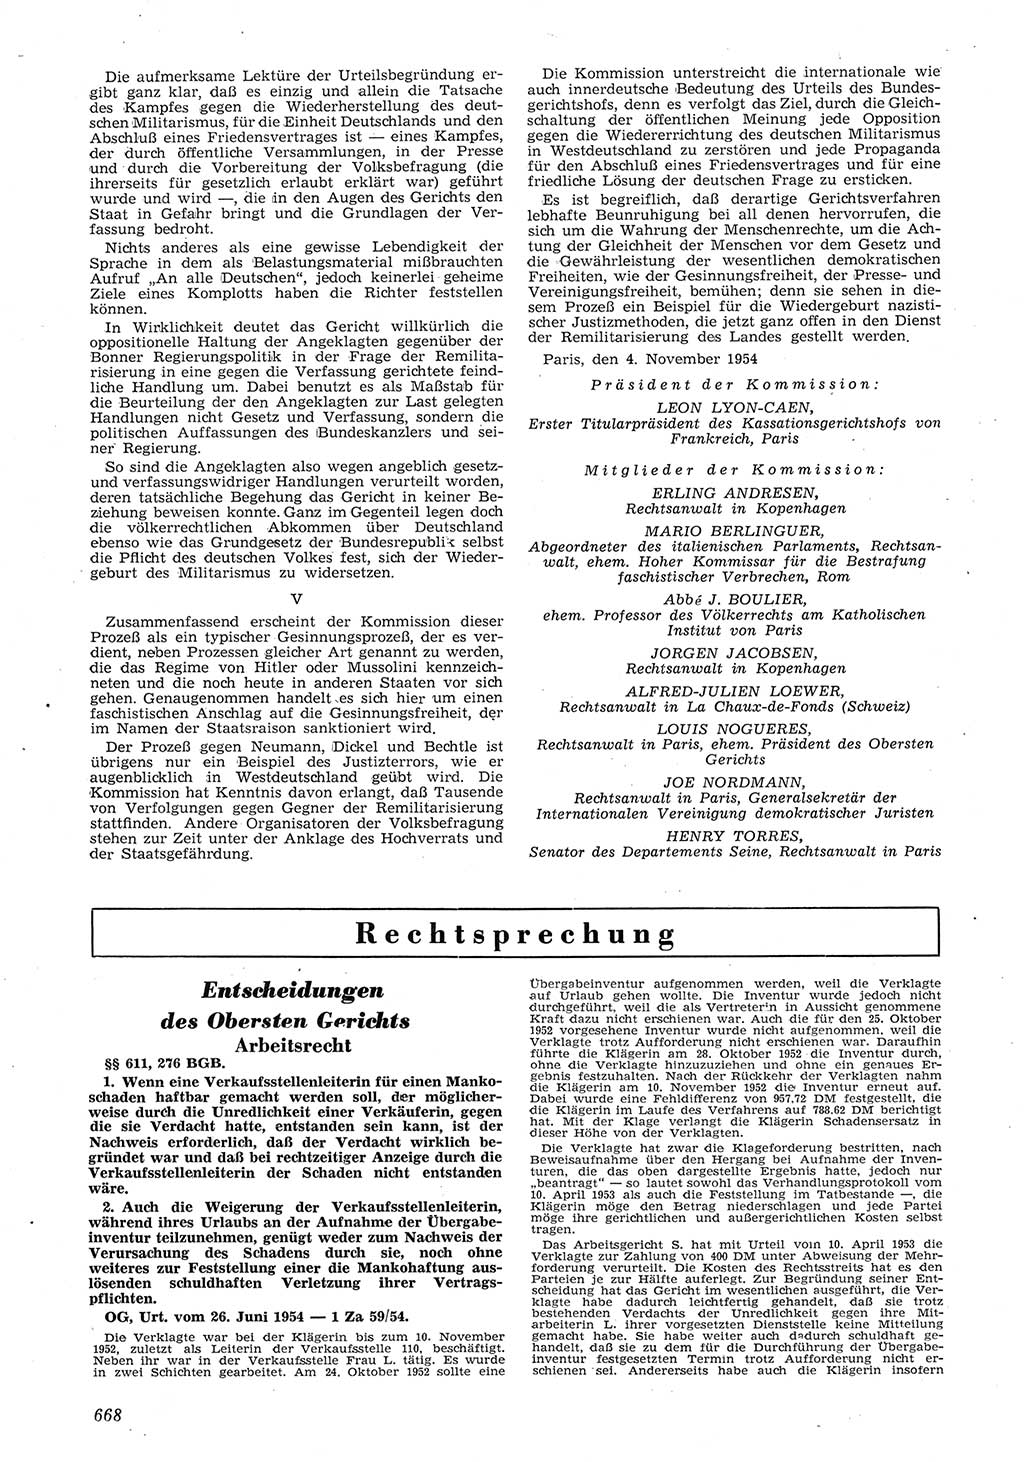 Neue Justiz (NJ), Zeitschrift für Recht und Rechtswissenschaft [Deutsche Demokratische Republik (DDR)], 8. Jahrgang 1954, Seite 668 (NJ DDR 1954, S. 668)